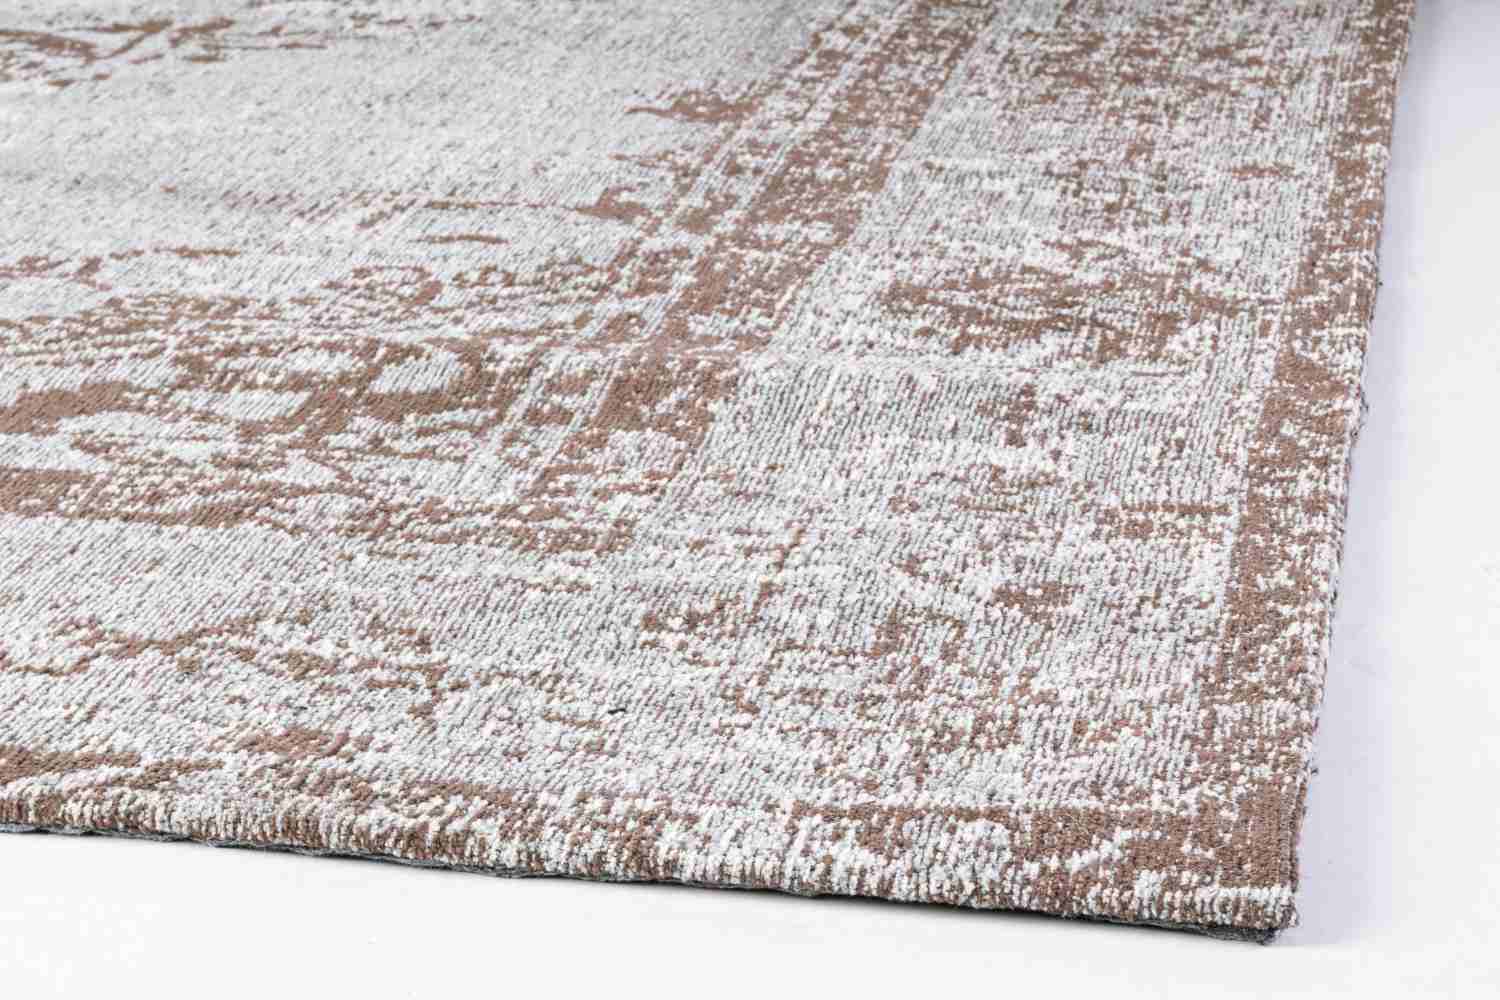 Der Teppich Sirial überzeugt mit seinem klassischen Design. Gefertigt wurde die Vorderseite aus 95% Chenille und 5% Polyester, die Rückseite aus 100% Baumwolle. Der Teppich besitzt einen hellgrauen Farbton und die Maße von 140x200 cm.